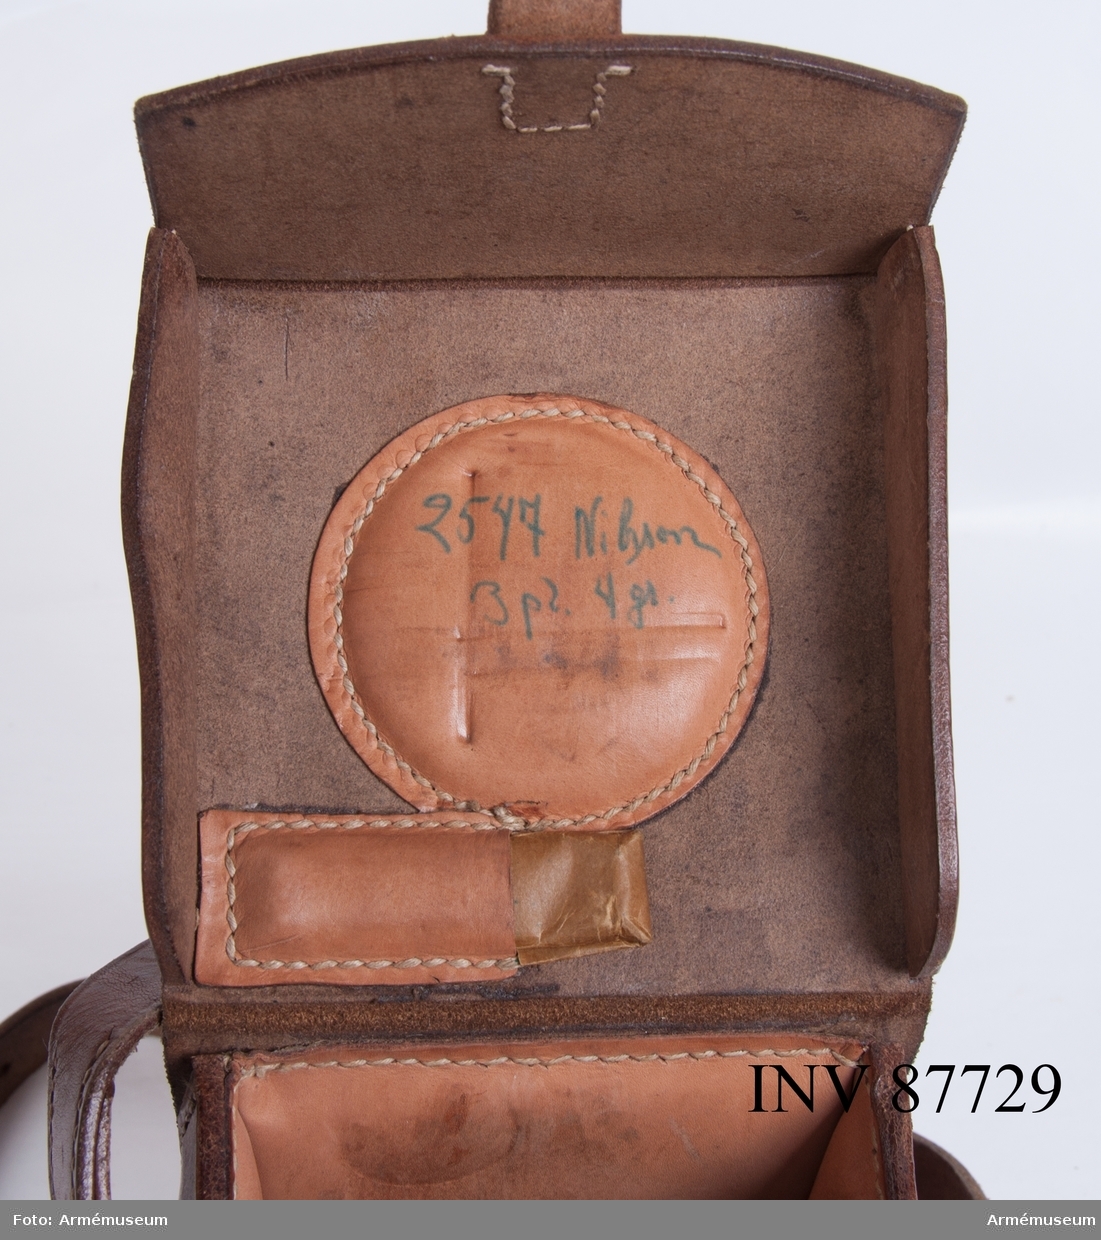 Väska i läder till riktinstrument m/1936 medföljer, märkt 11580 samt på insidan locket handskriven märkning "2547 Nilsson 3 pl. 4 gr."